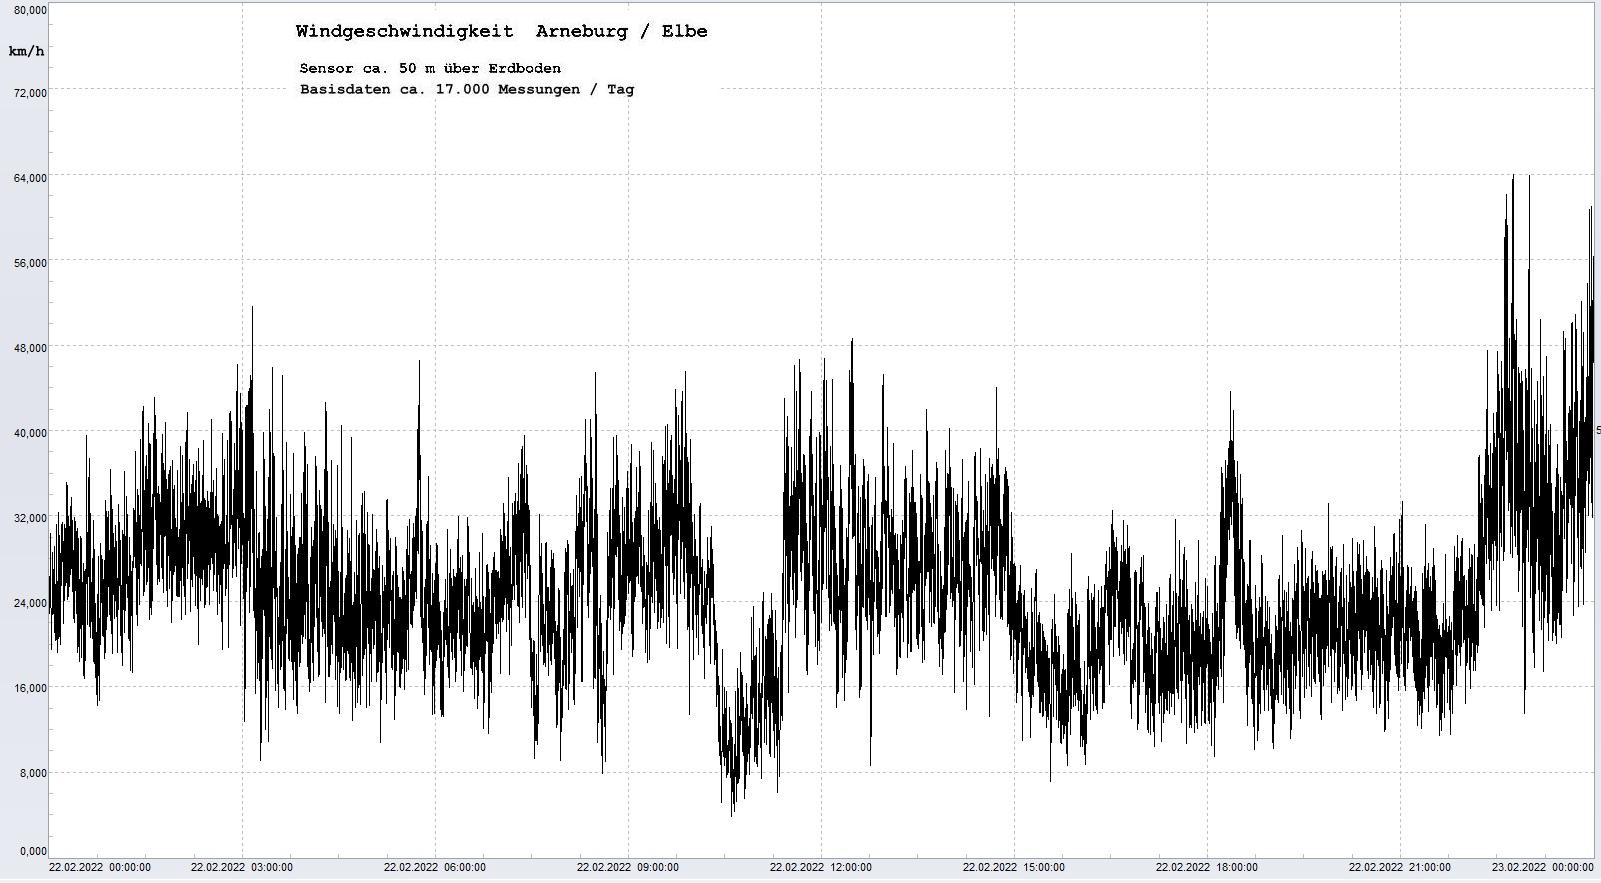 Arneburg Tages-Diagramm Winddaten, 22.02.2022
  Diagramm, Sensor auf Gebude, ca. 50 m ber Erdboden, Basis: 5s-Aufzeichnung